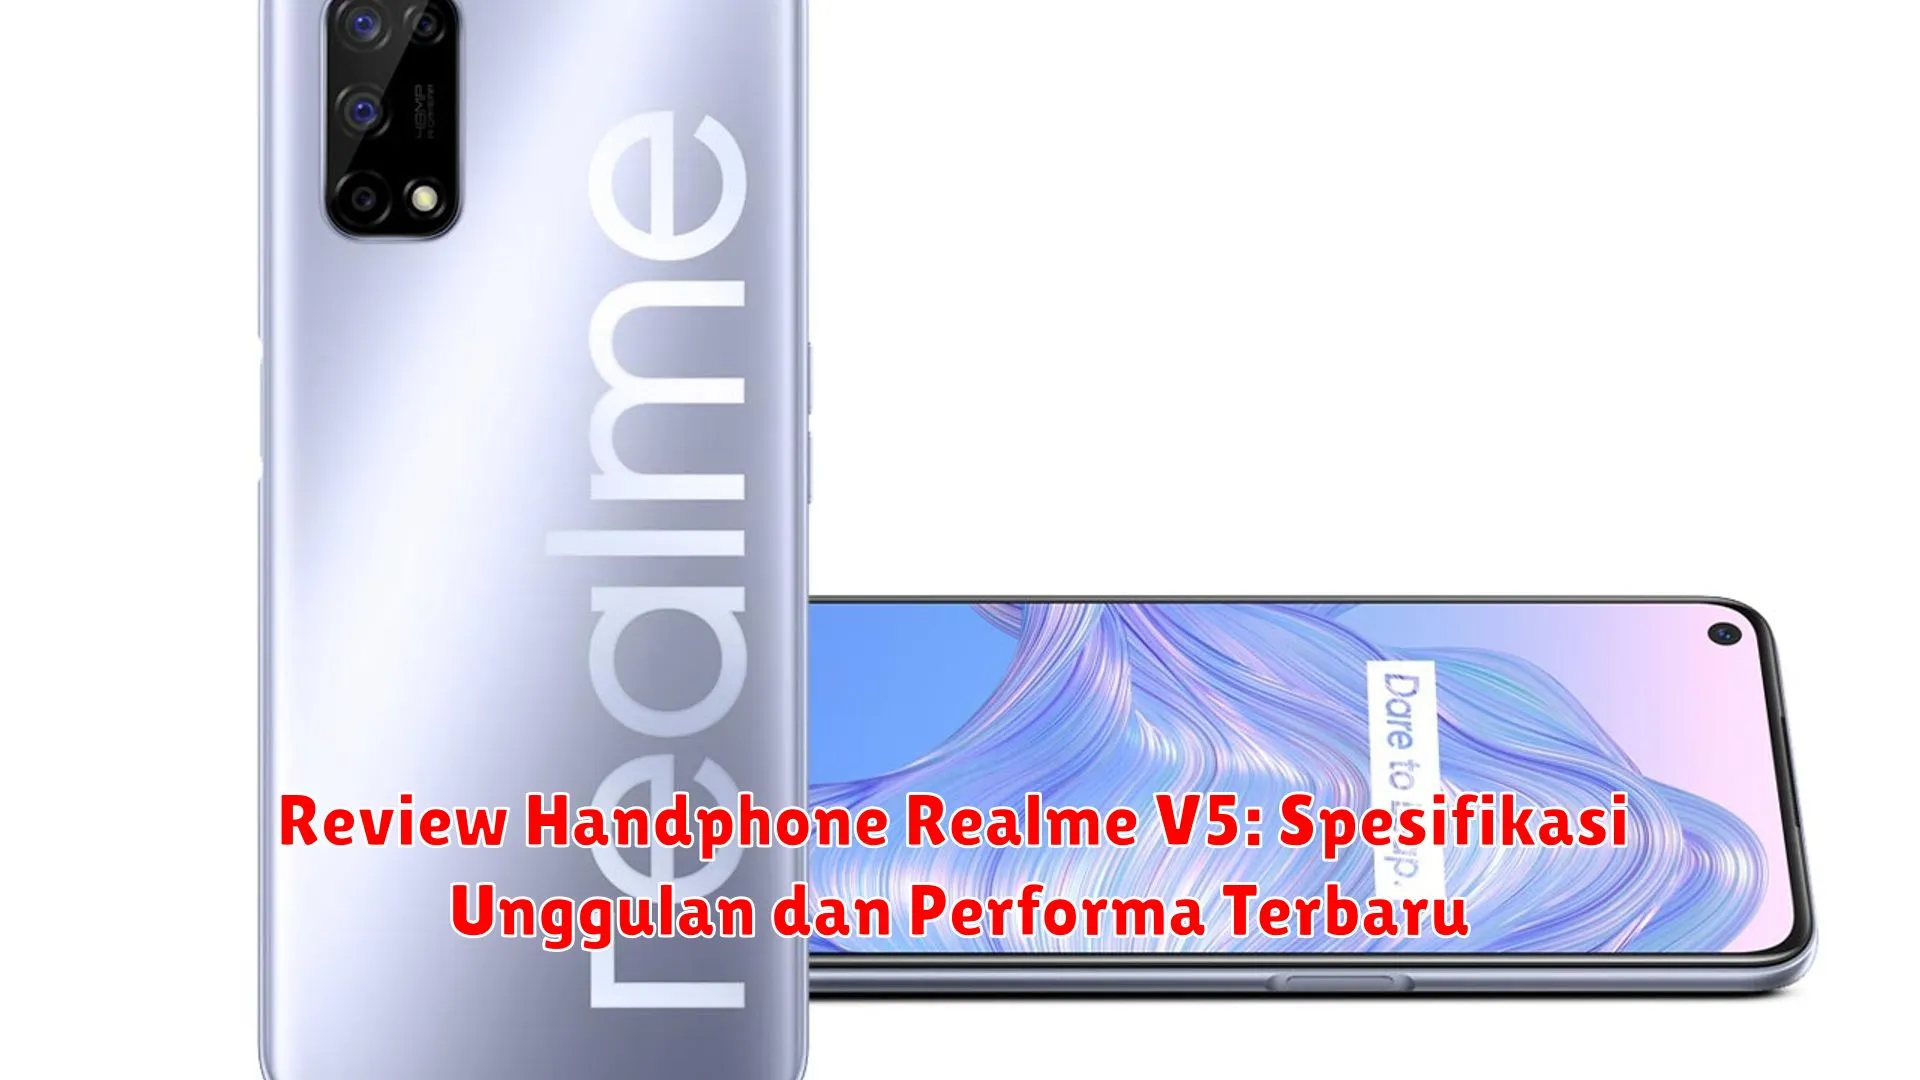 Review Handphone Realme V5: Spesifikasi Unggulan dan Performa Terbaru